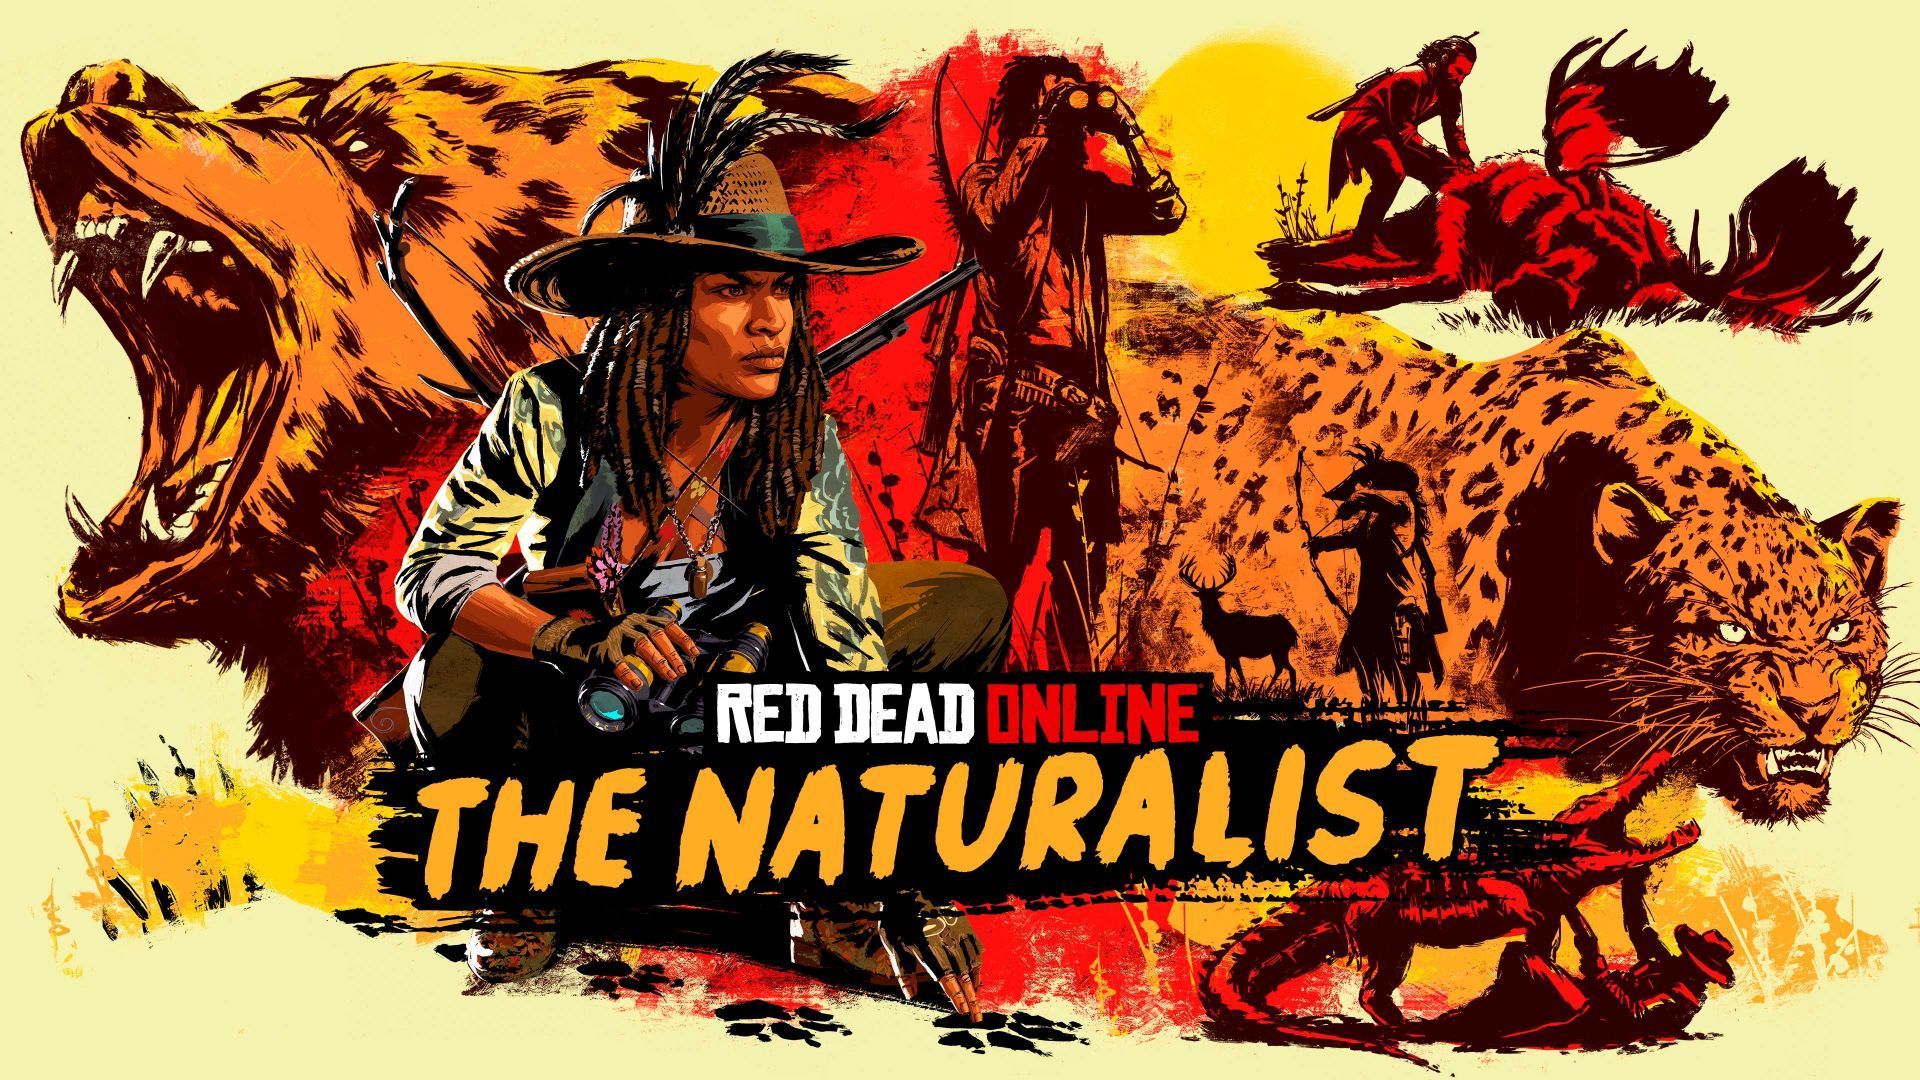 Obtenez des bonus pour naturalistes et célébrez Thanksgiving ce mois-ci dans Red Dead Online - Rockstar Games